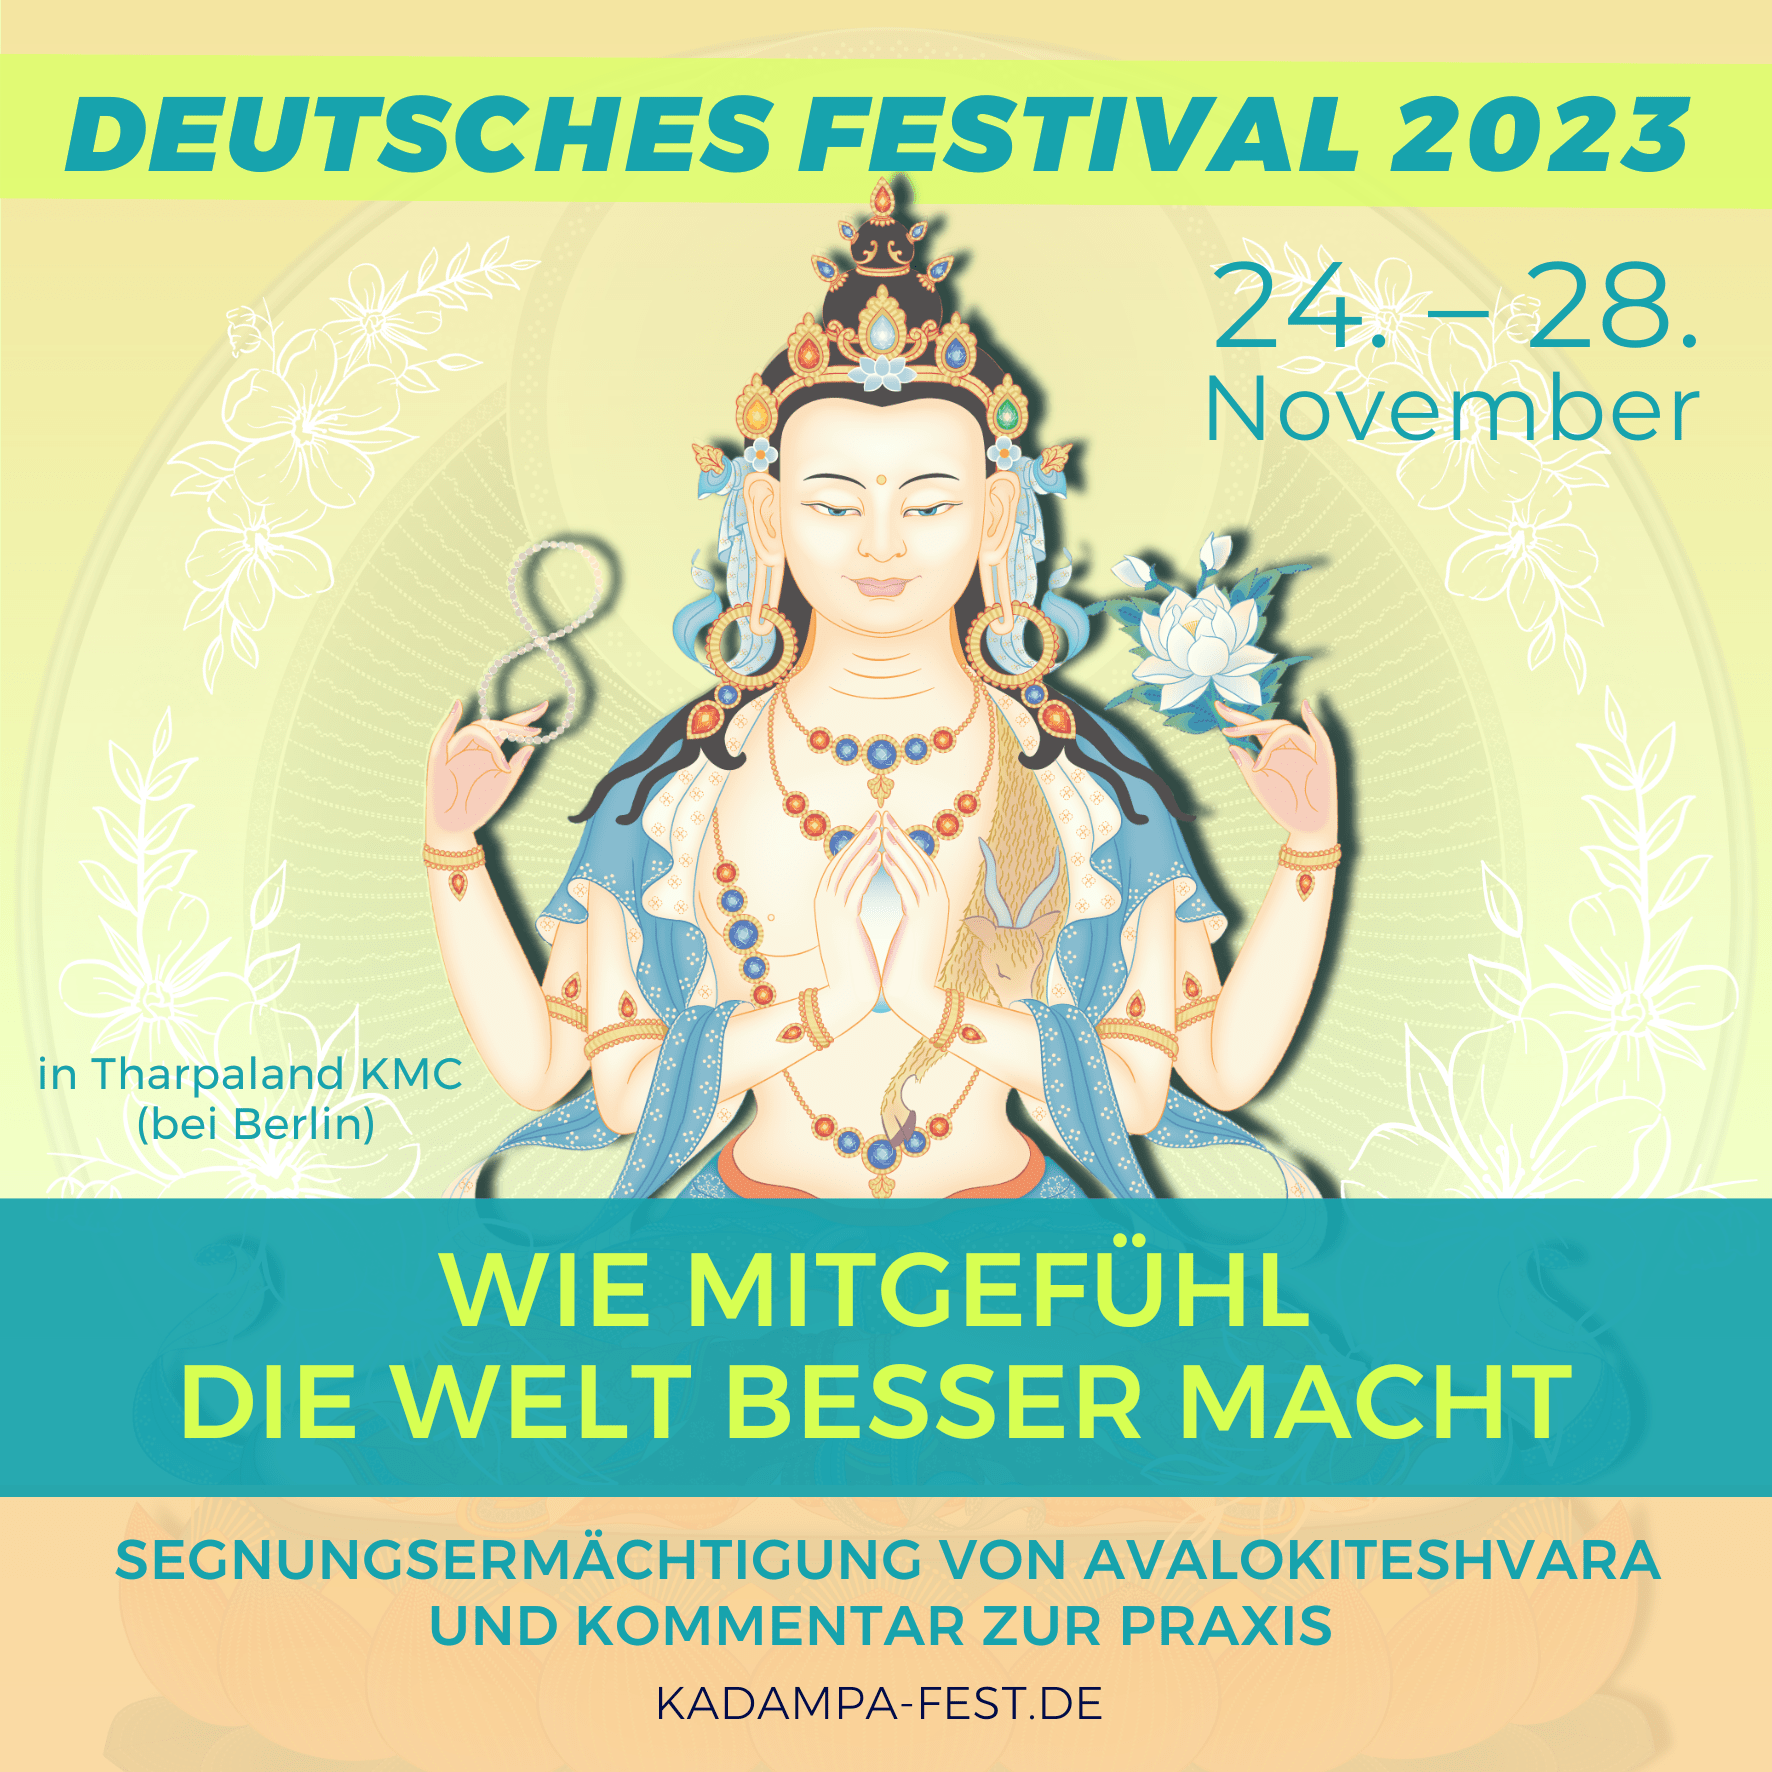 Deutsches Festival in Tharpaland KMC bei Berlin